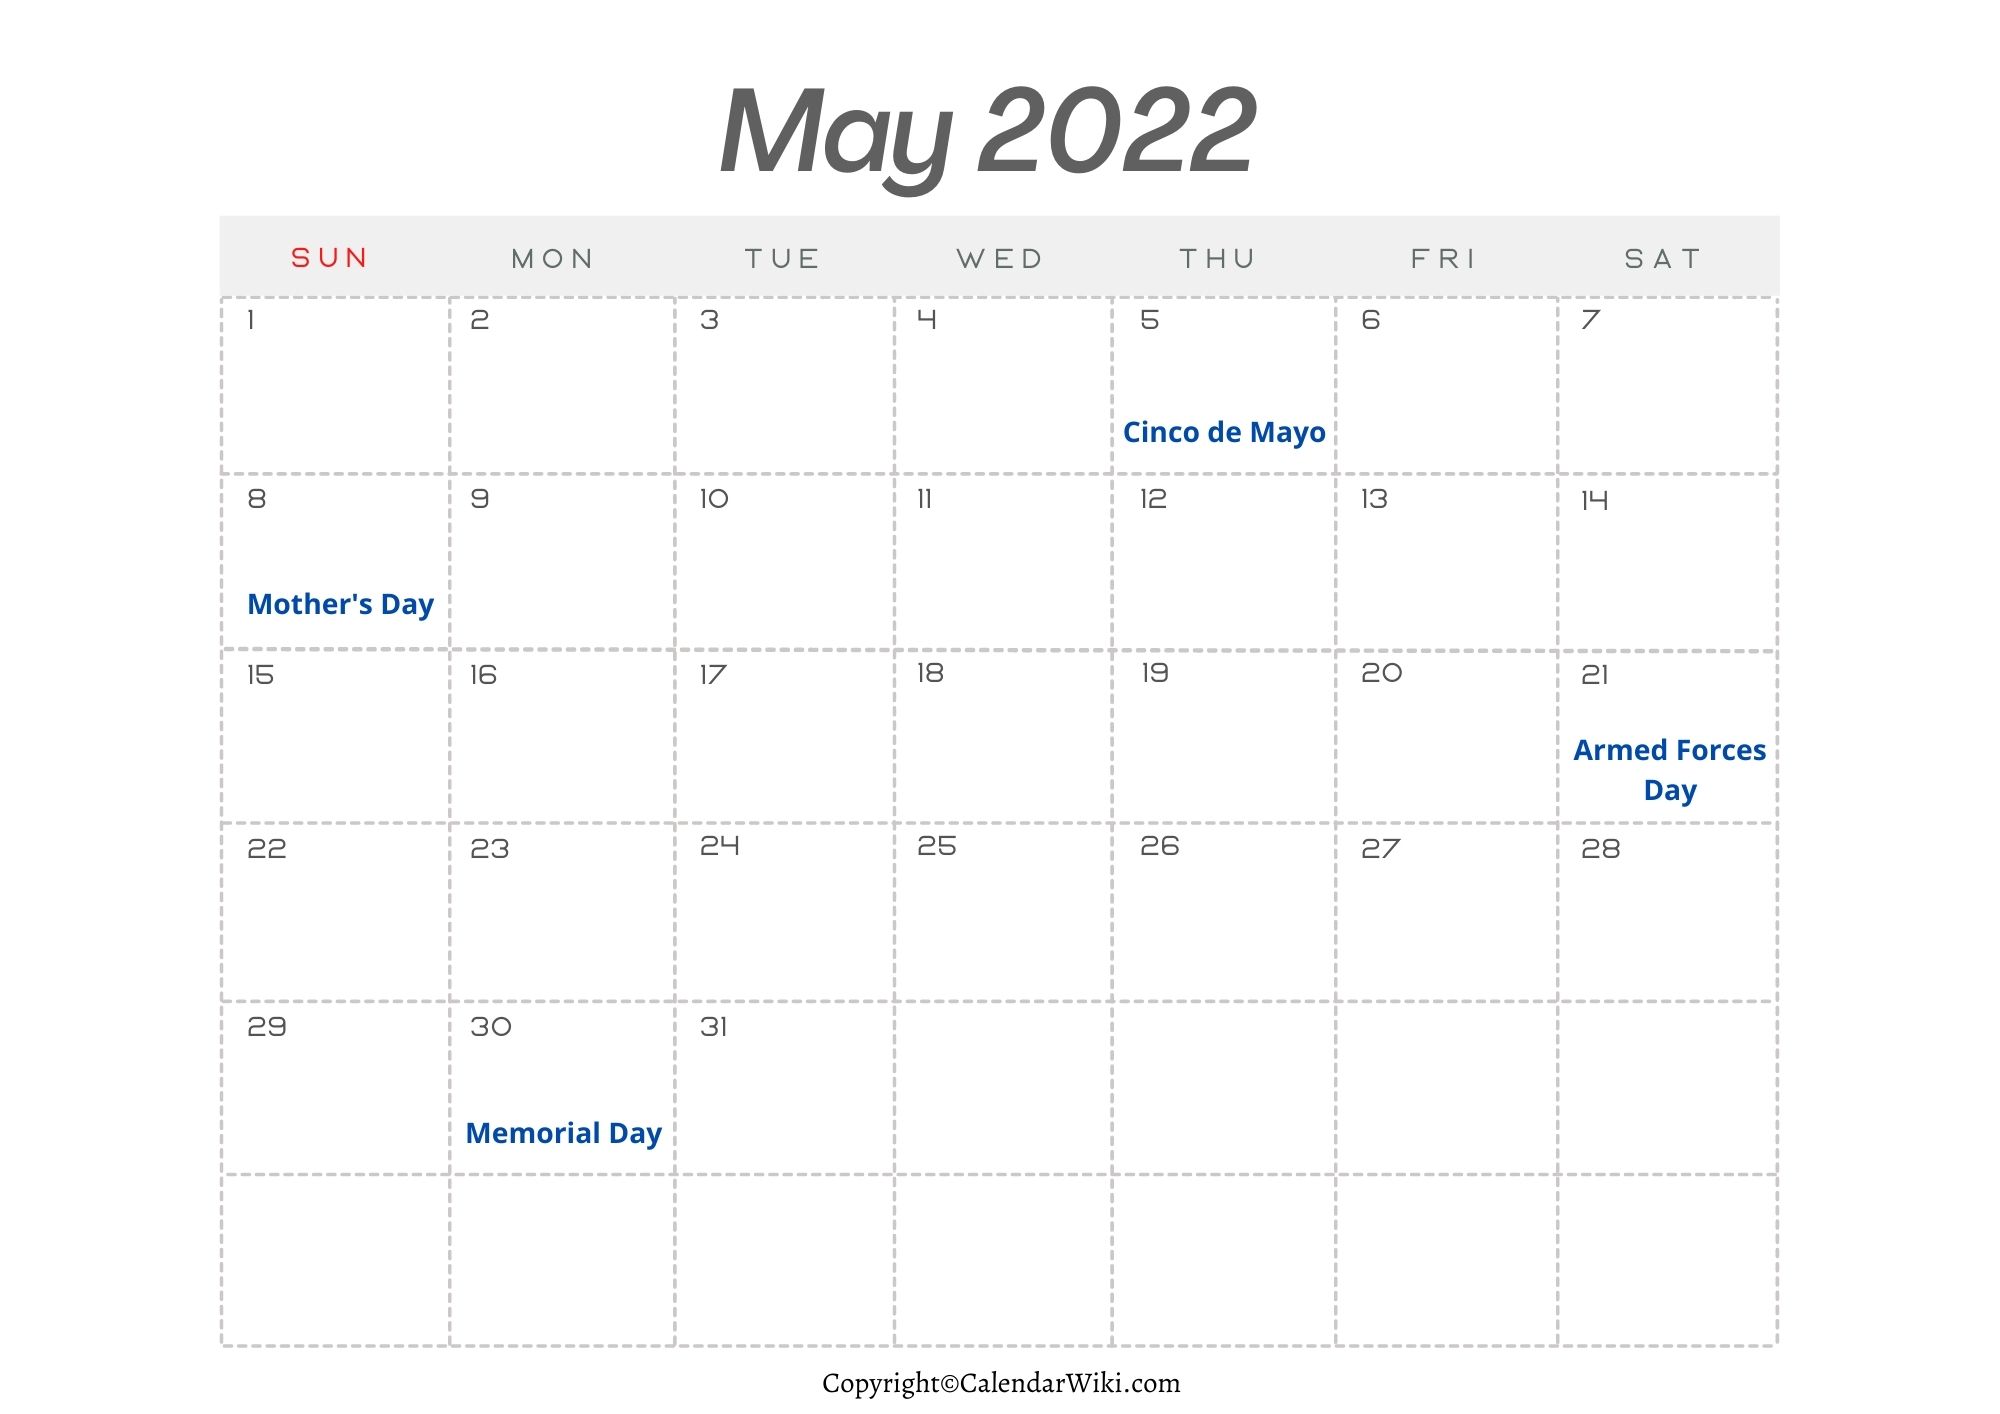 May Holidays 2022